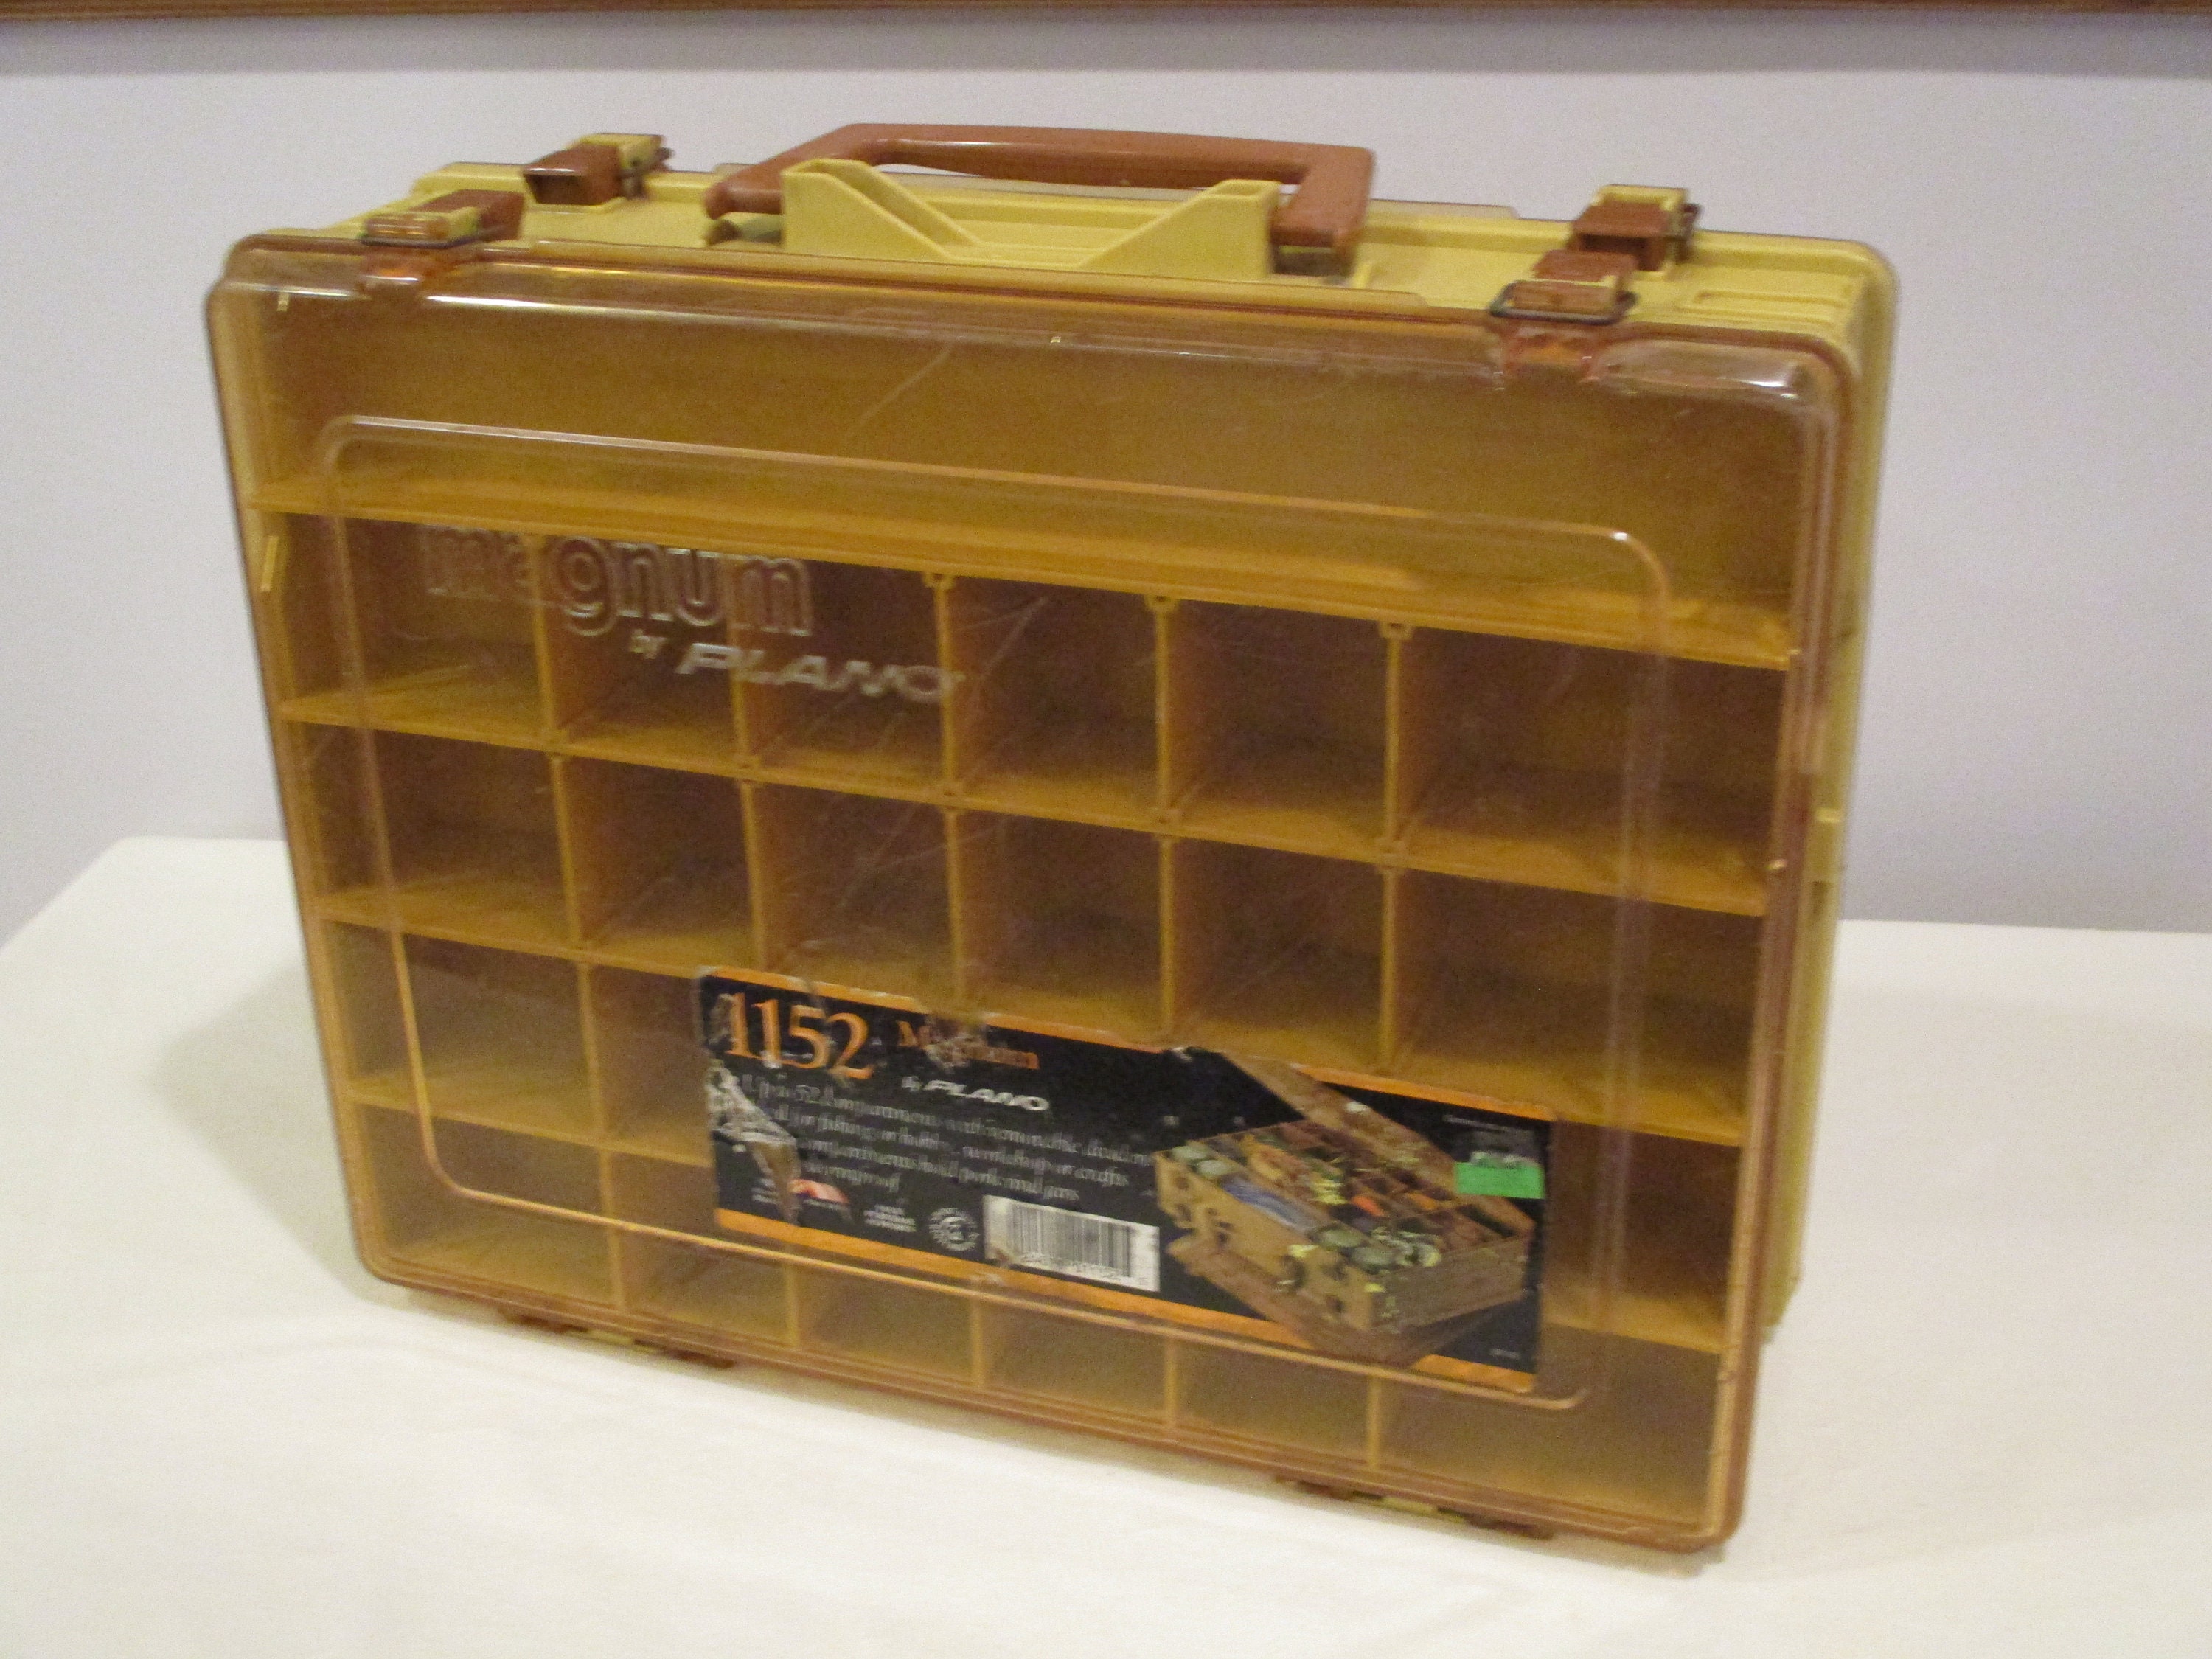 1152 Magnum Fishing Tackle Box,plano Fishing Tackle Box,large Fishing Tackle  Box,box With Compartments,craft Supply Box,art Supply Box 